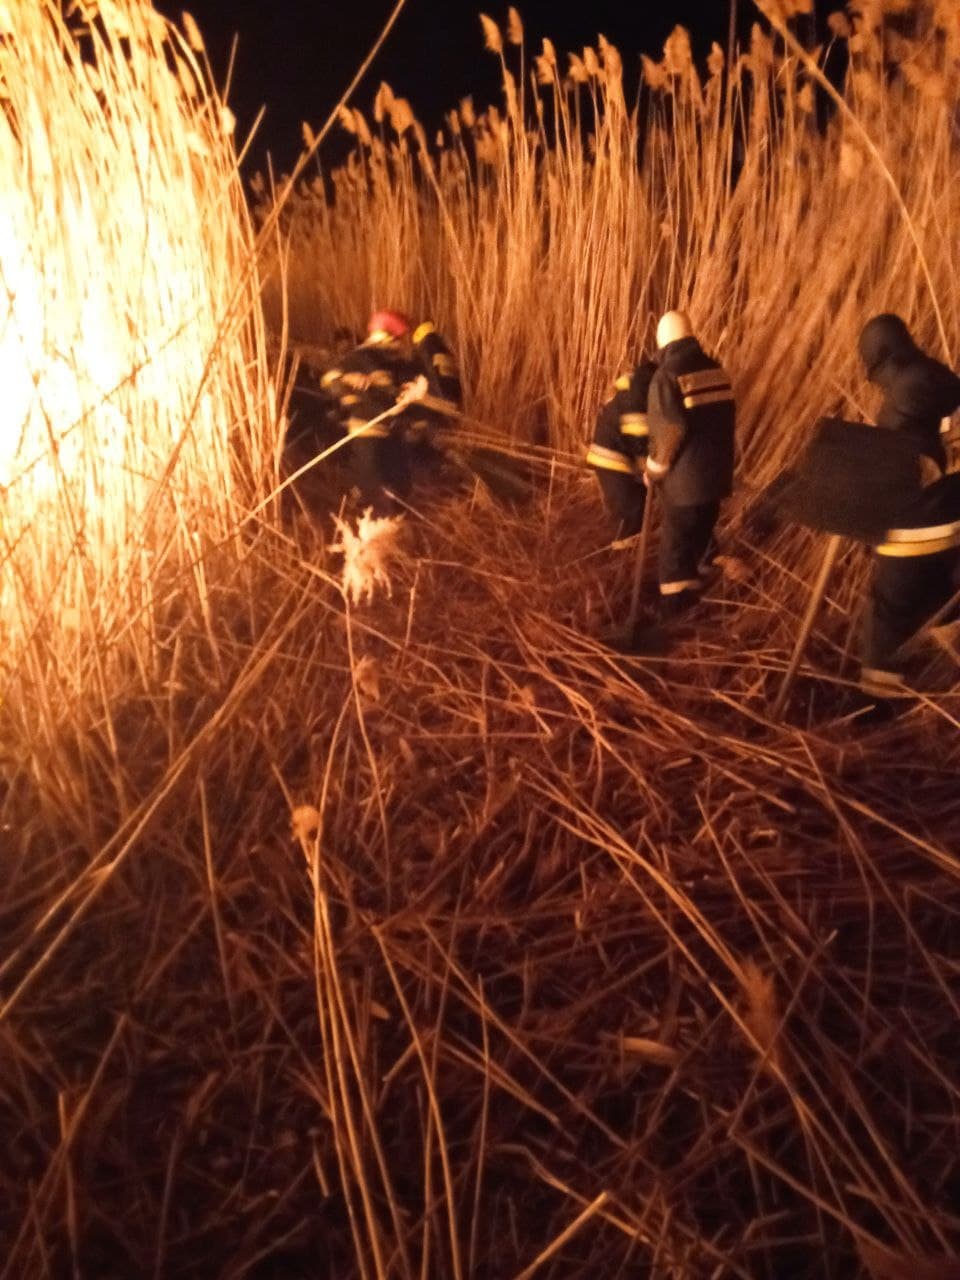 (ВИДЕО) В Кагульском районе произошел пожар. Огонь уничтожил 100 га растительности